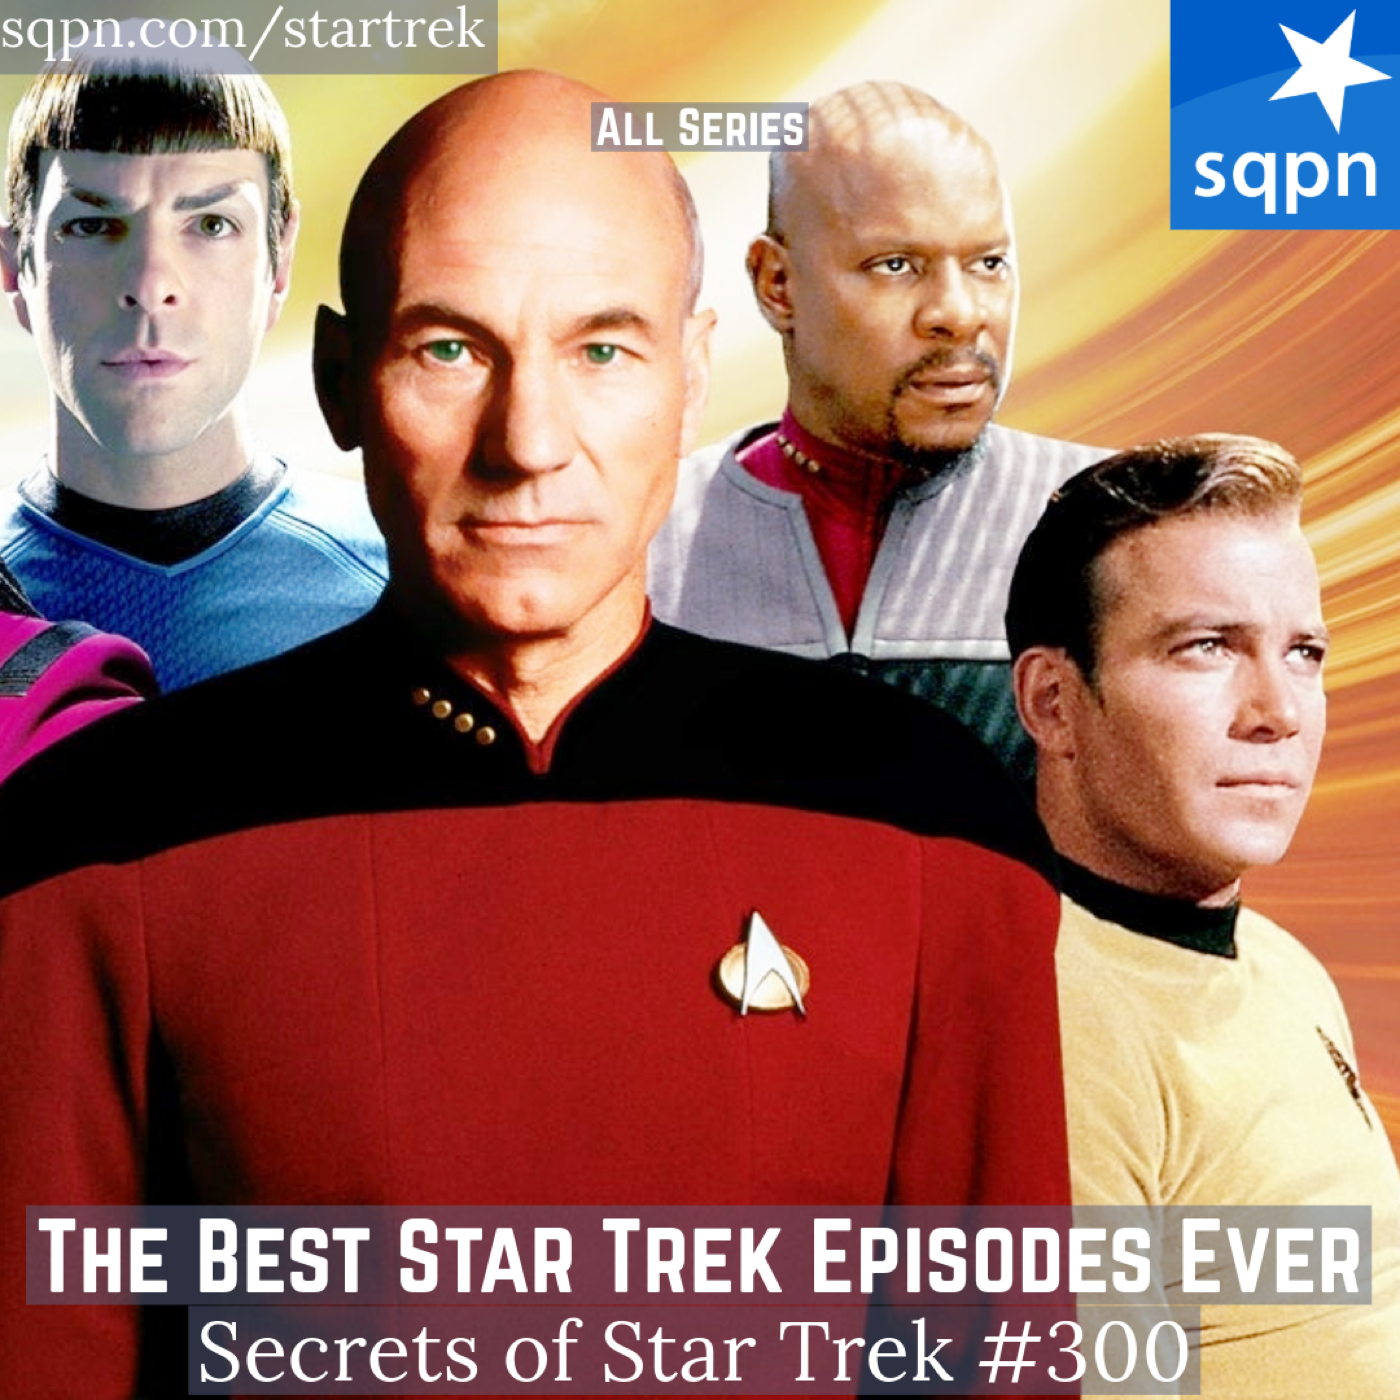 The Best Star Trek Episodes Ever